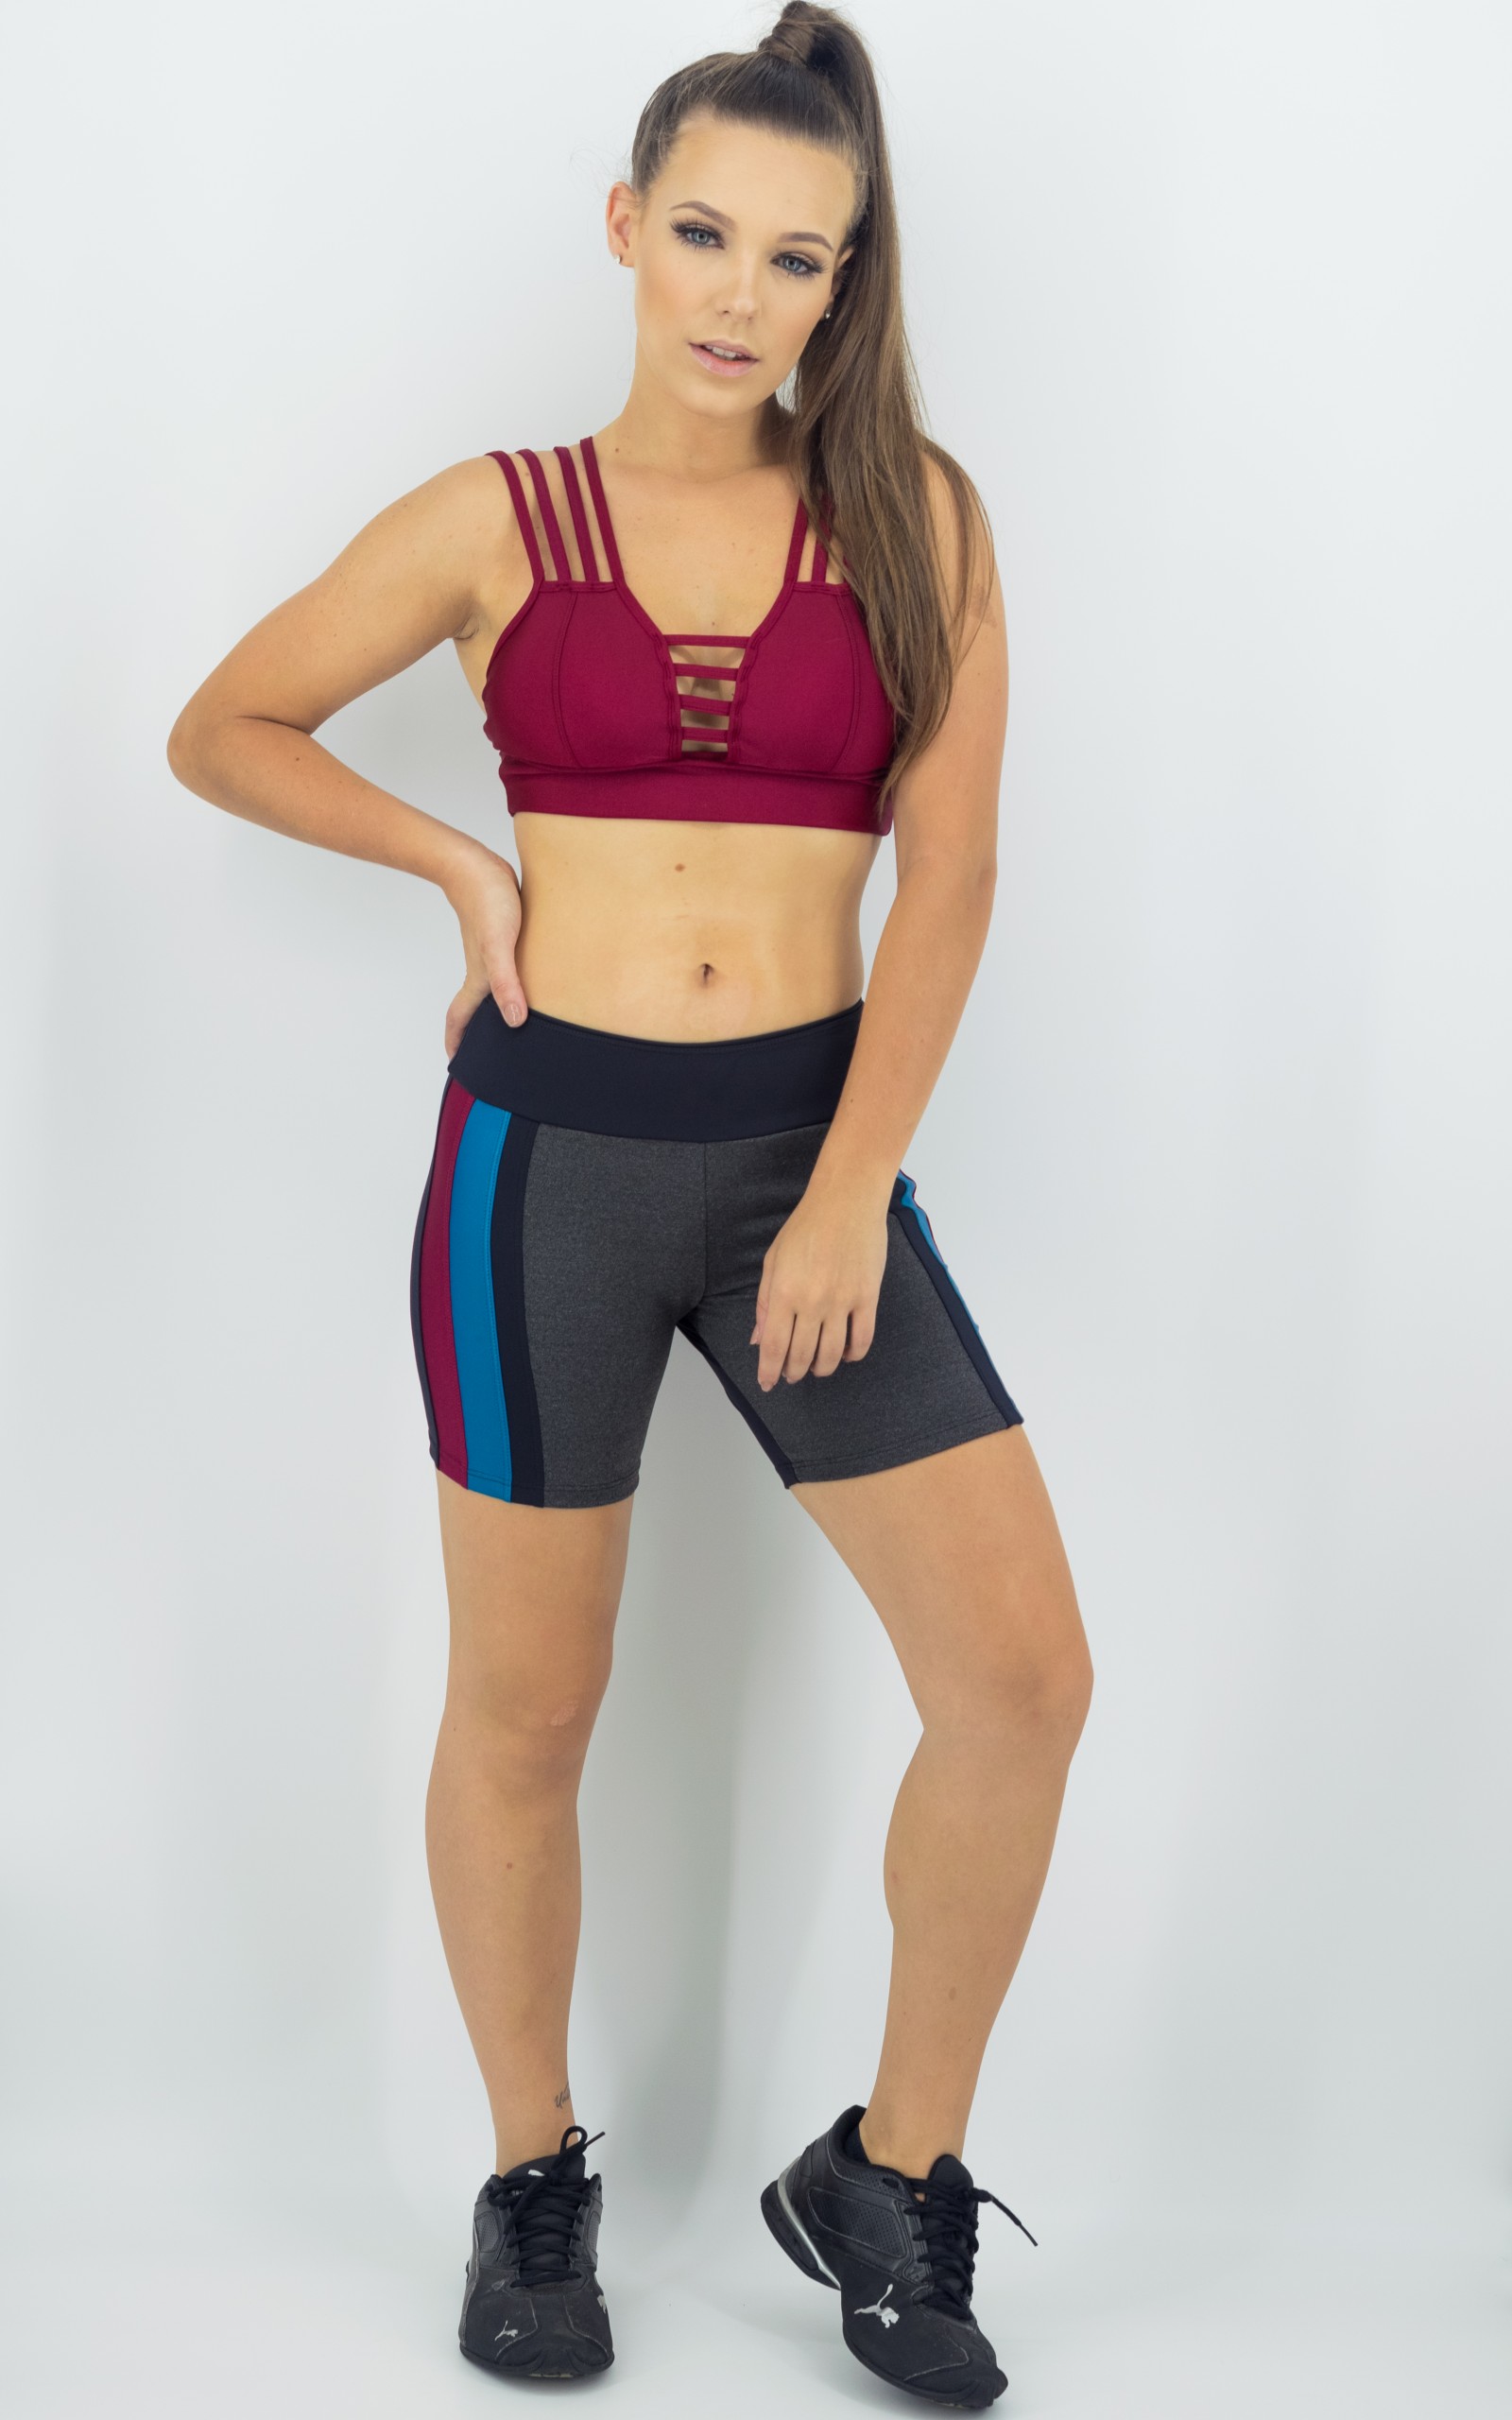 Top Fun Bordo, Coleção Move Your Body - NKT Fitwear Moda Fitness